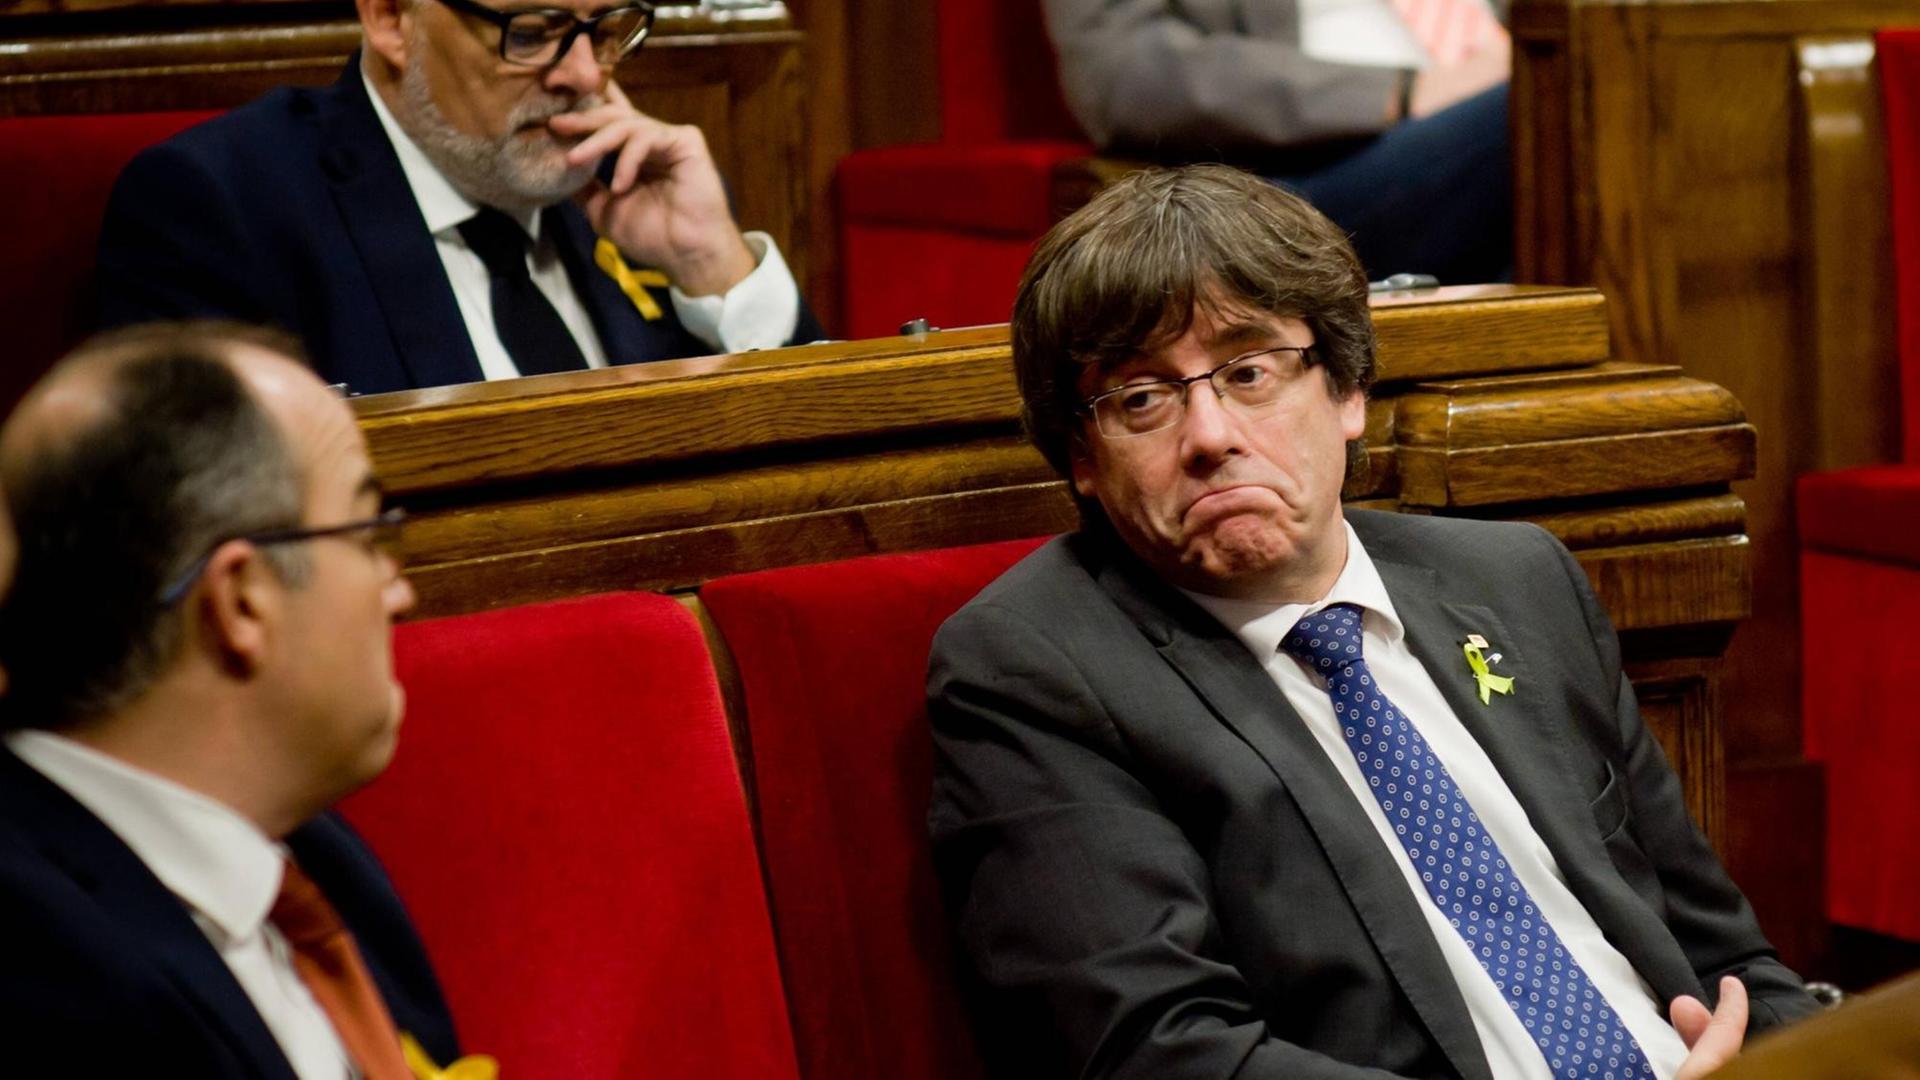 Der katalanische Regionalchef Puigdemont soll wegen "Rebellion" angeklagt werden - Foto aufgenommen am 27.10.2017